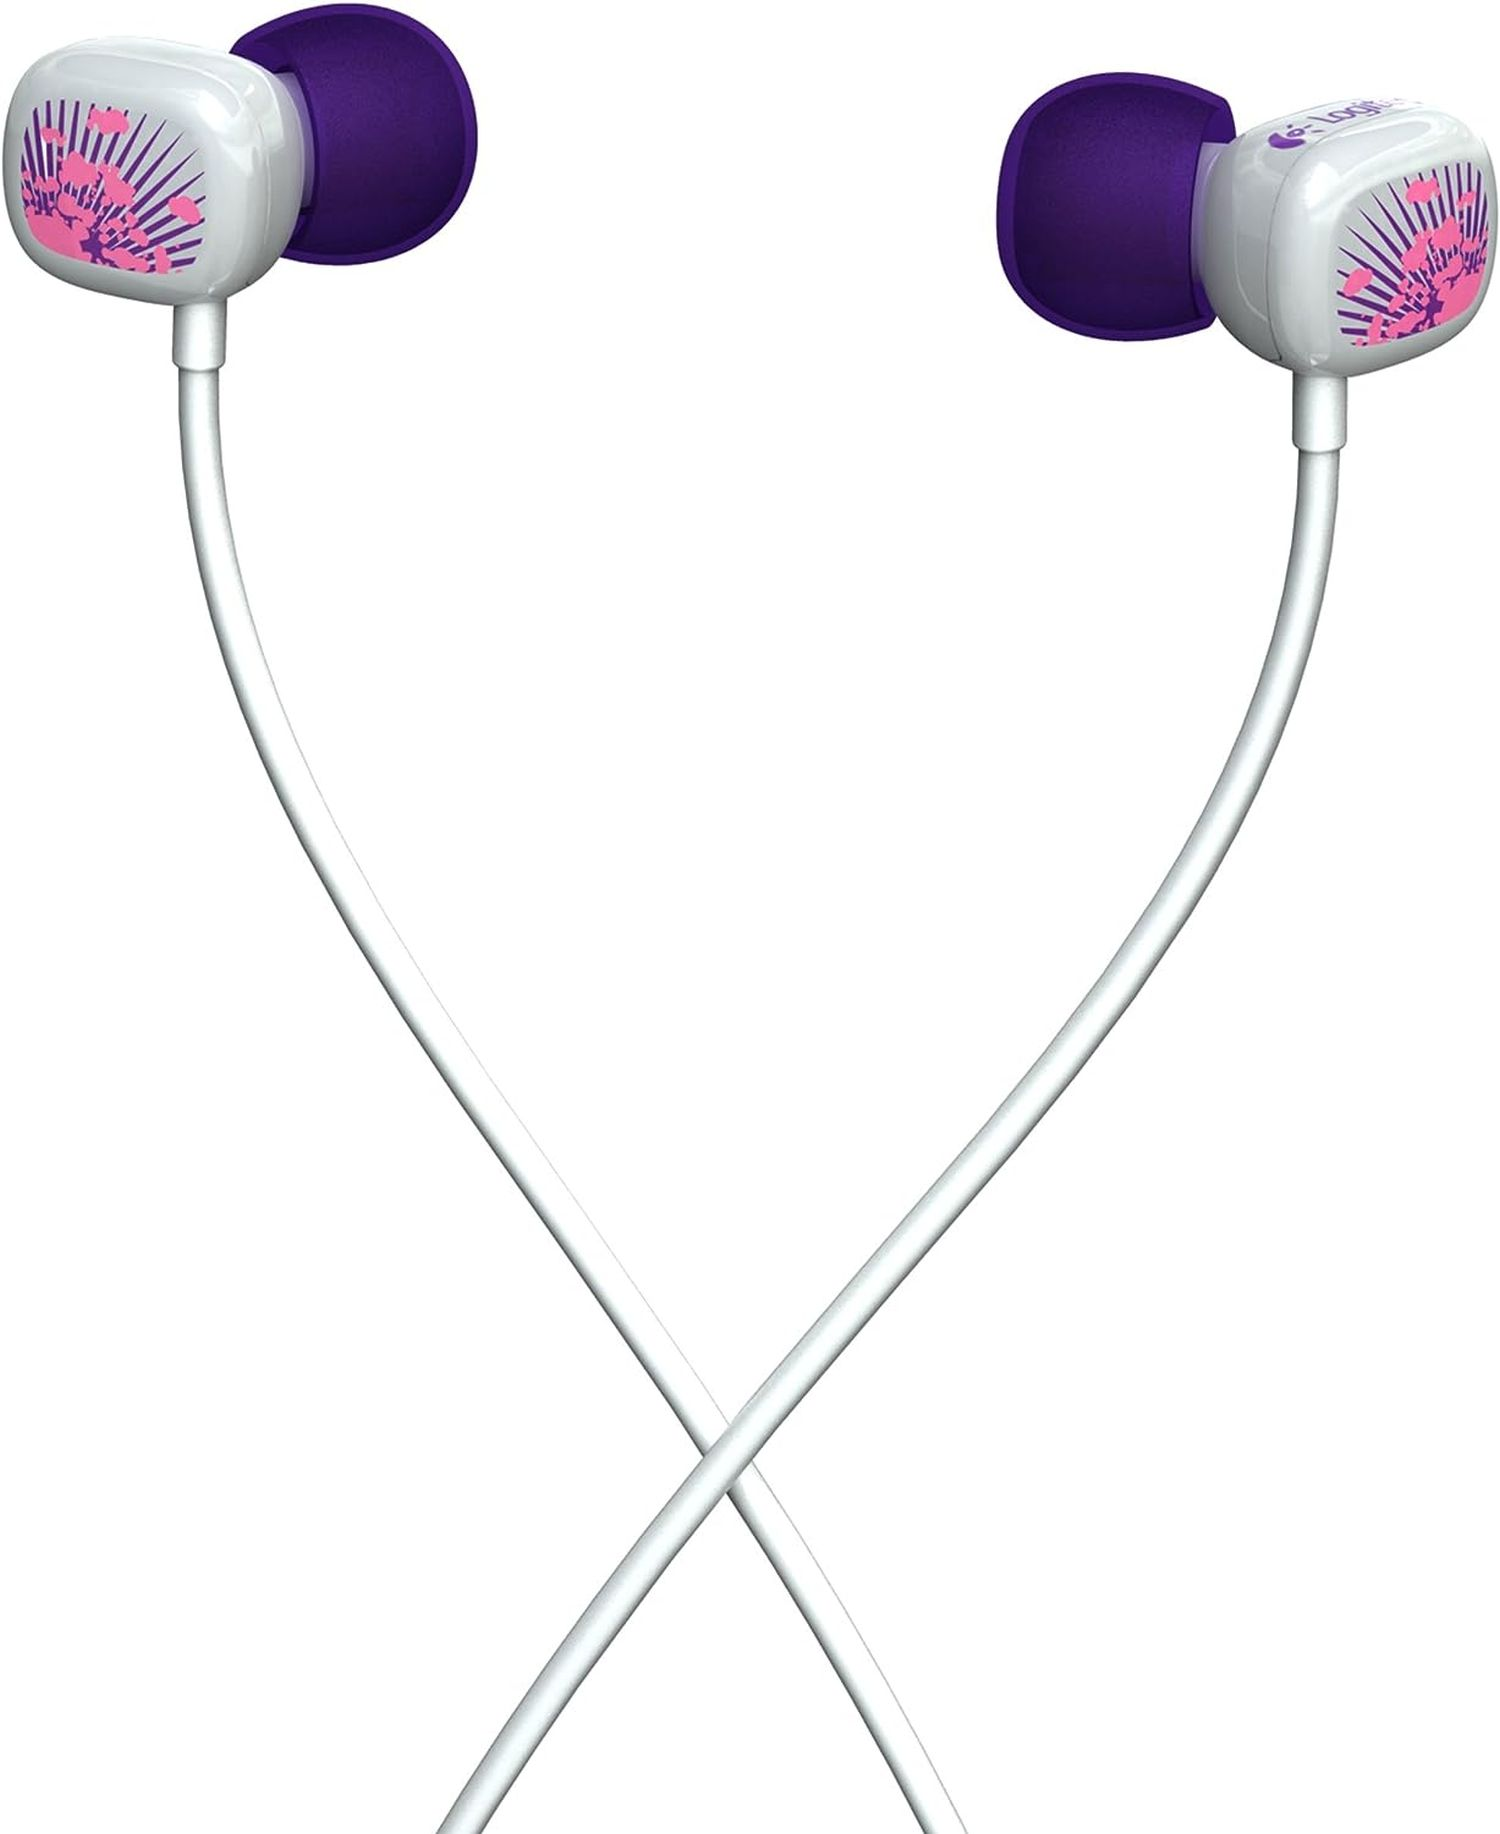 LOGITECH Ultimate Ears 100, Violett Kopfhörer In-ear